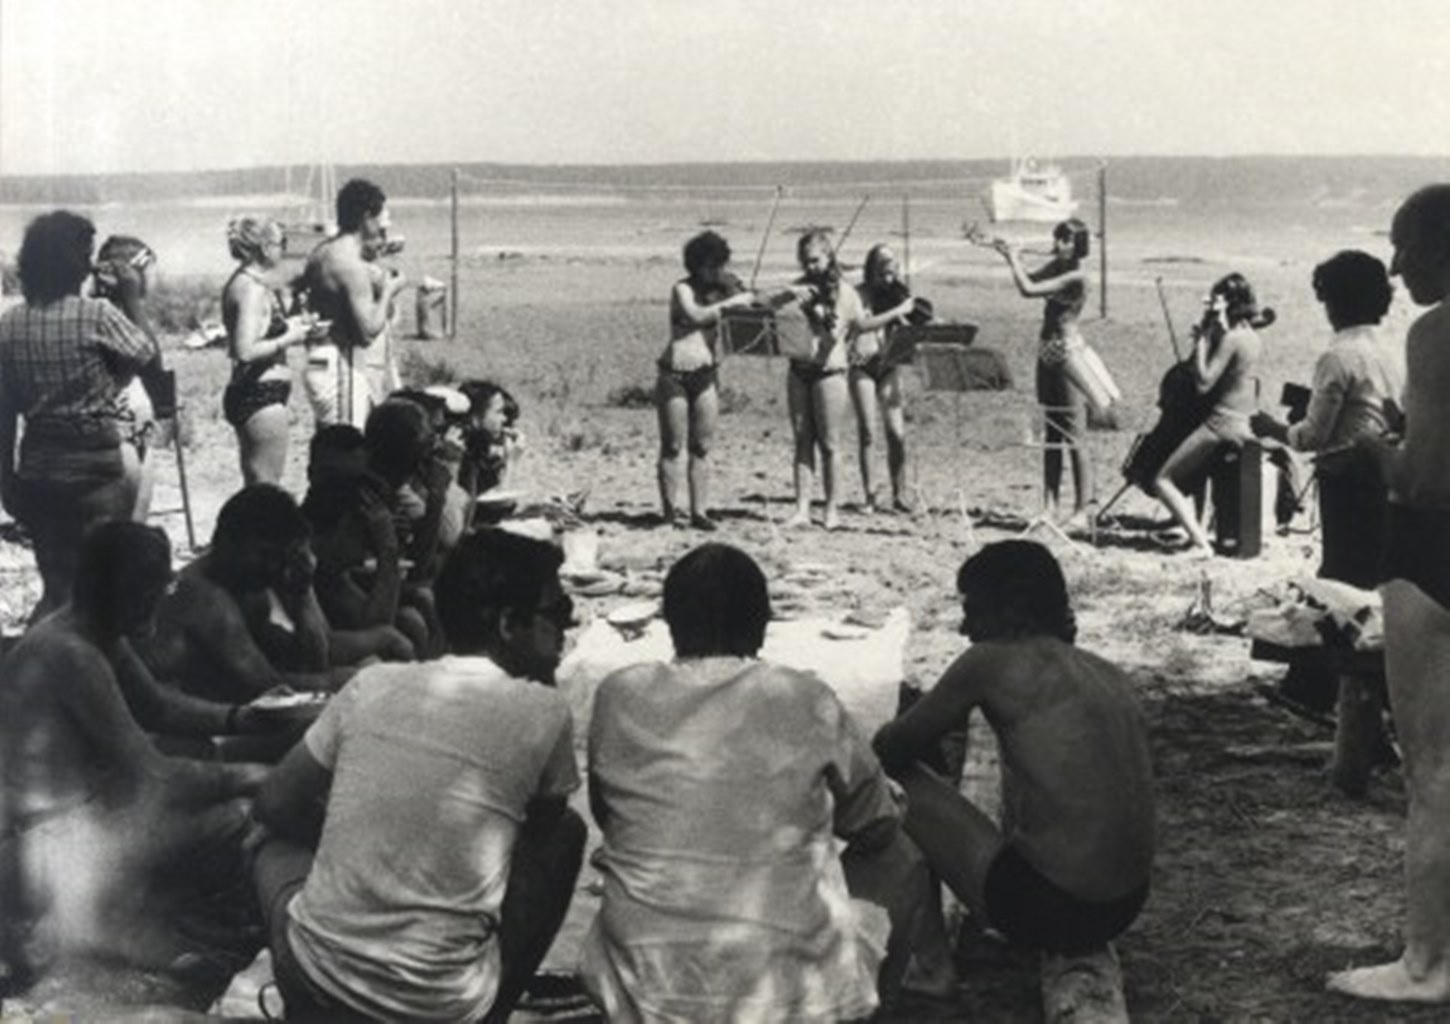 Струнный оркестр выступает для отдыхающих прямо на горячем песке  